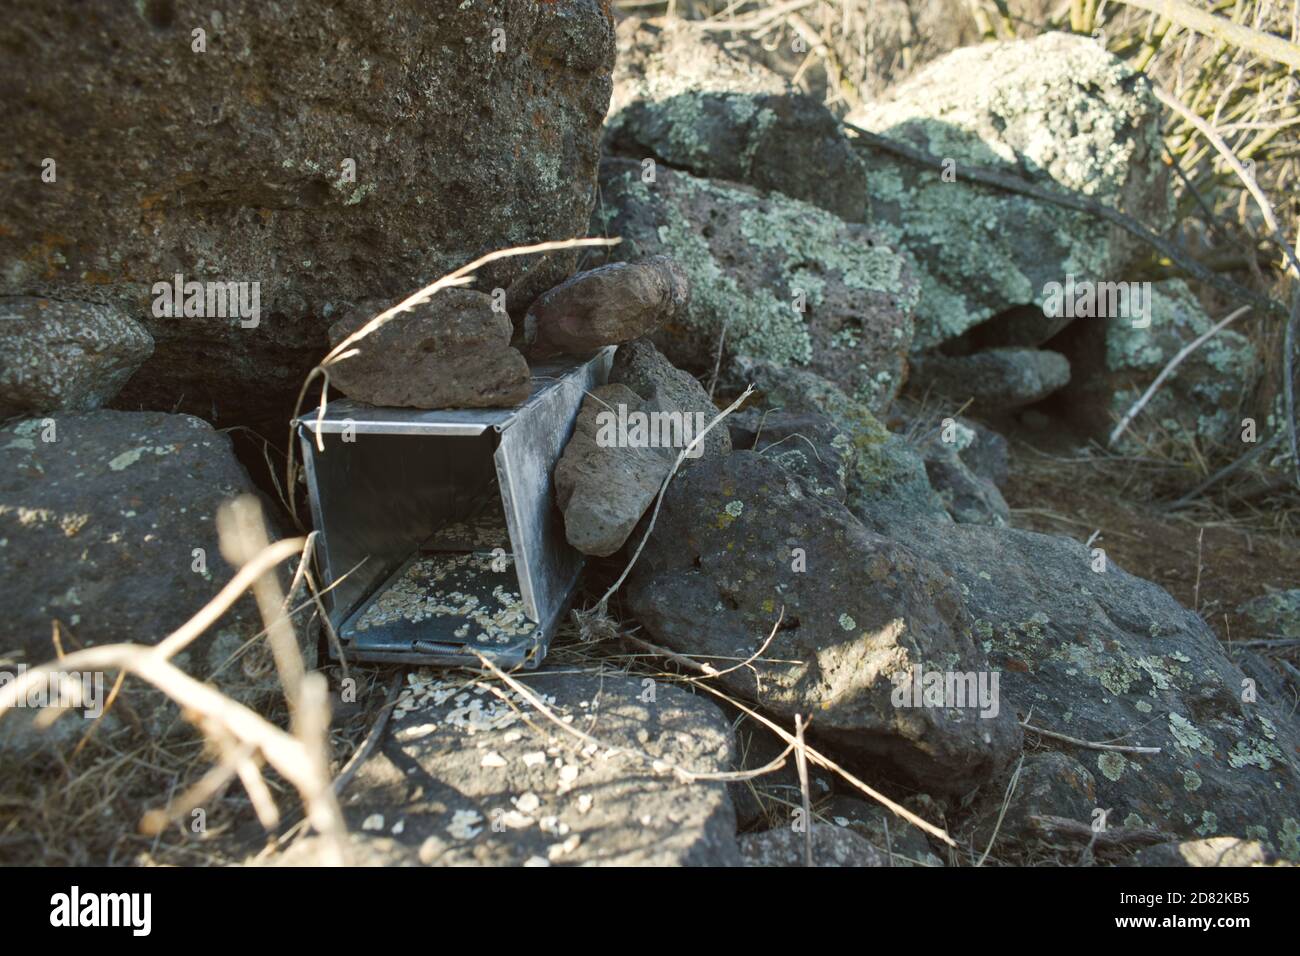 Naturschutz Ökologie: Verwendung von Fallen Typ Sherman für eine Mikro-Säugetiere Zählung in einem mediterranen Wald, Chile. Stockfoto